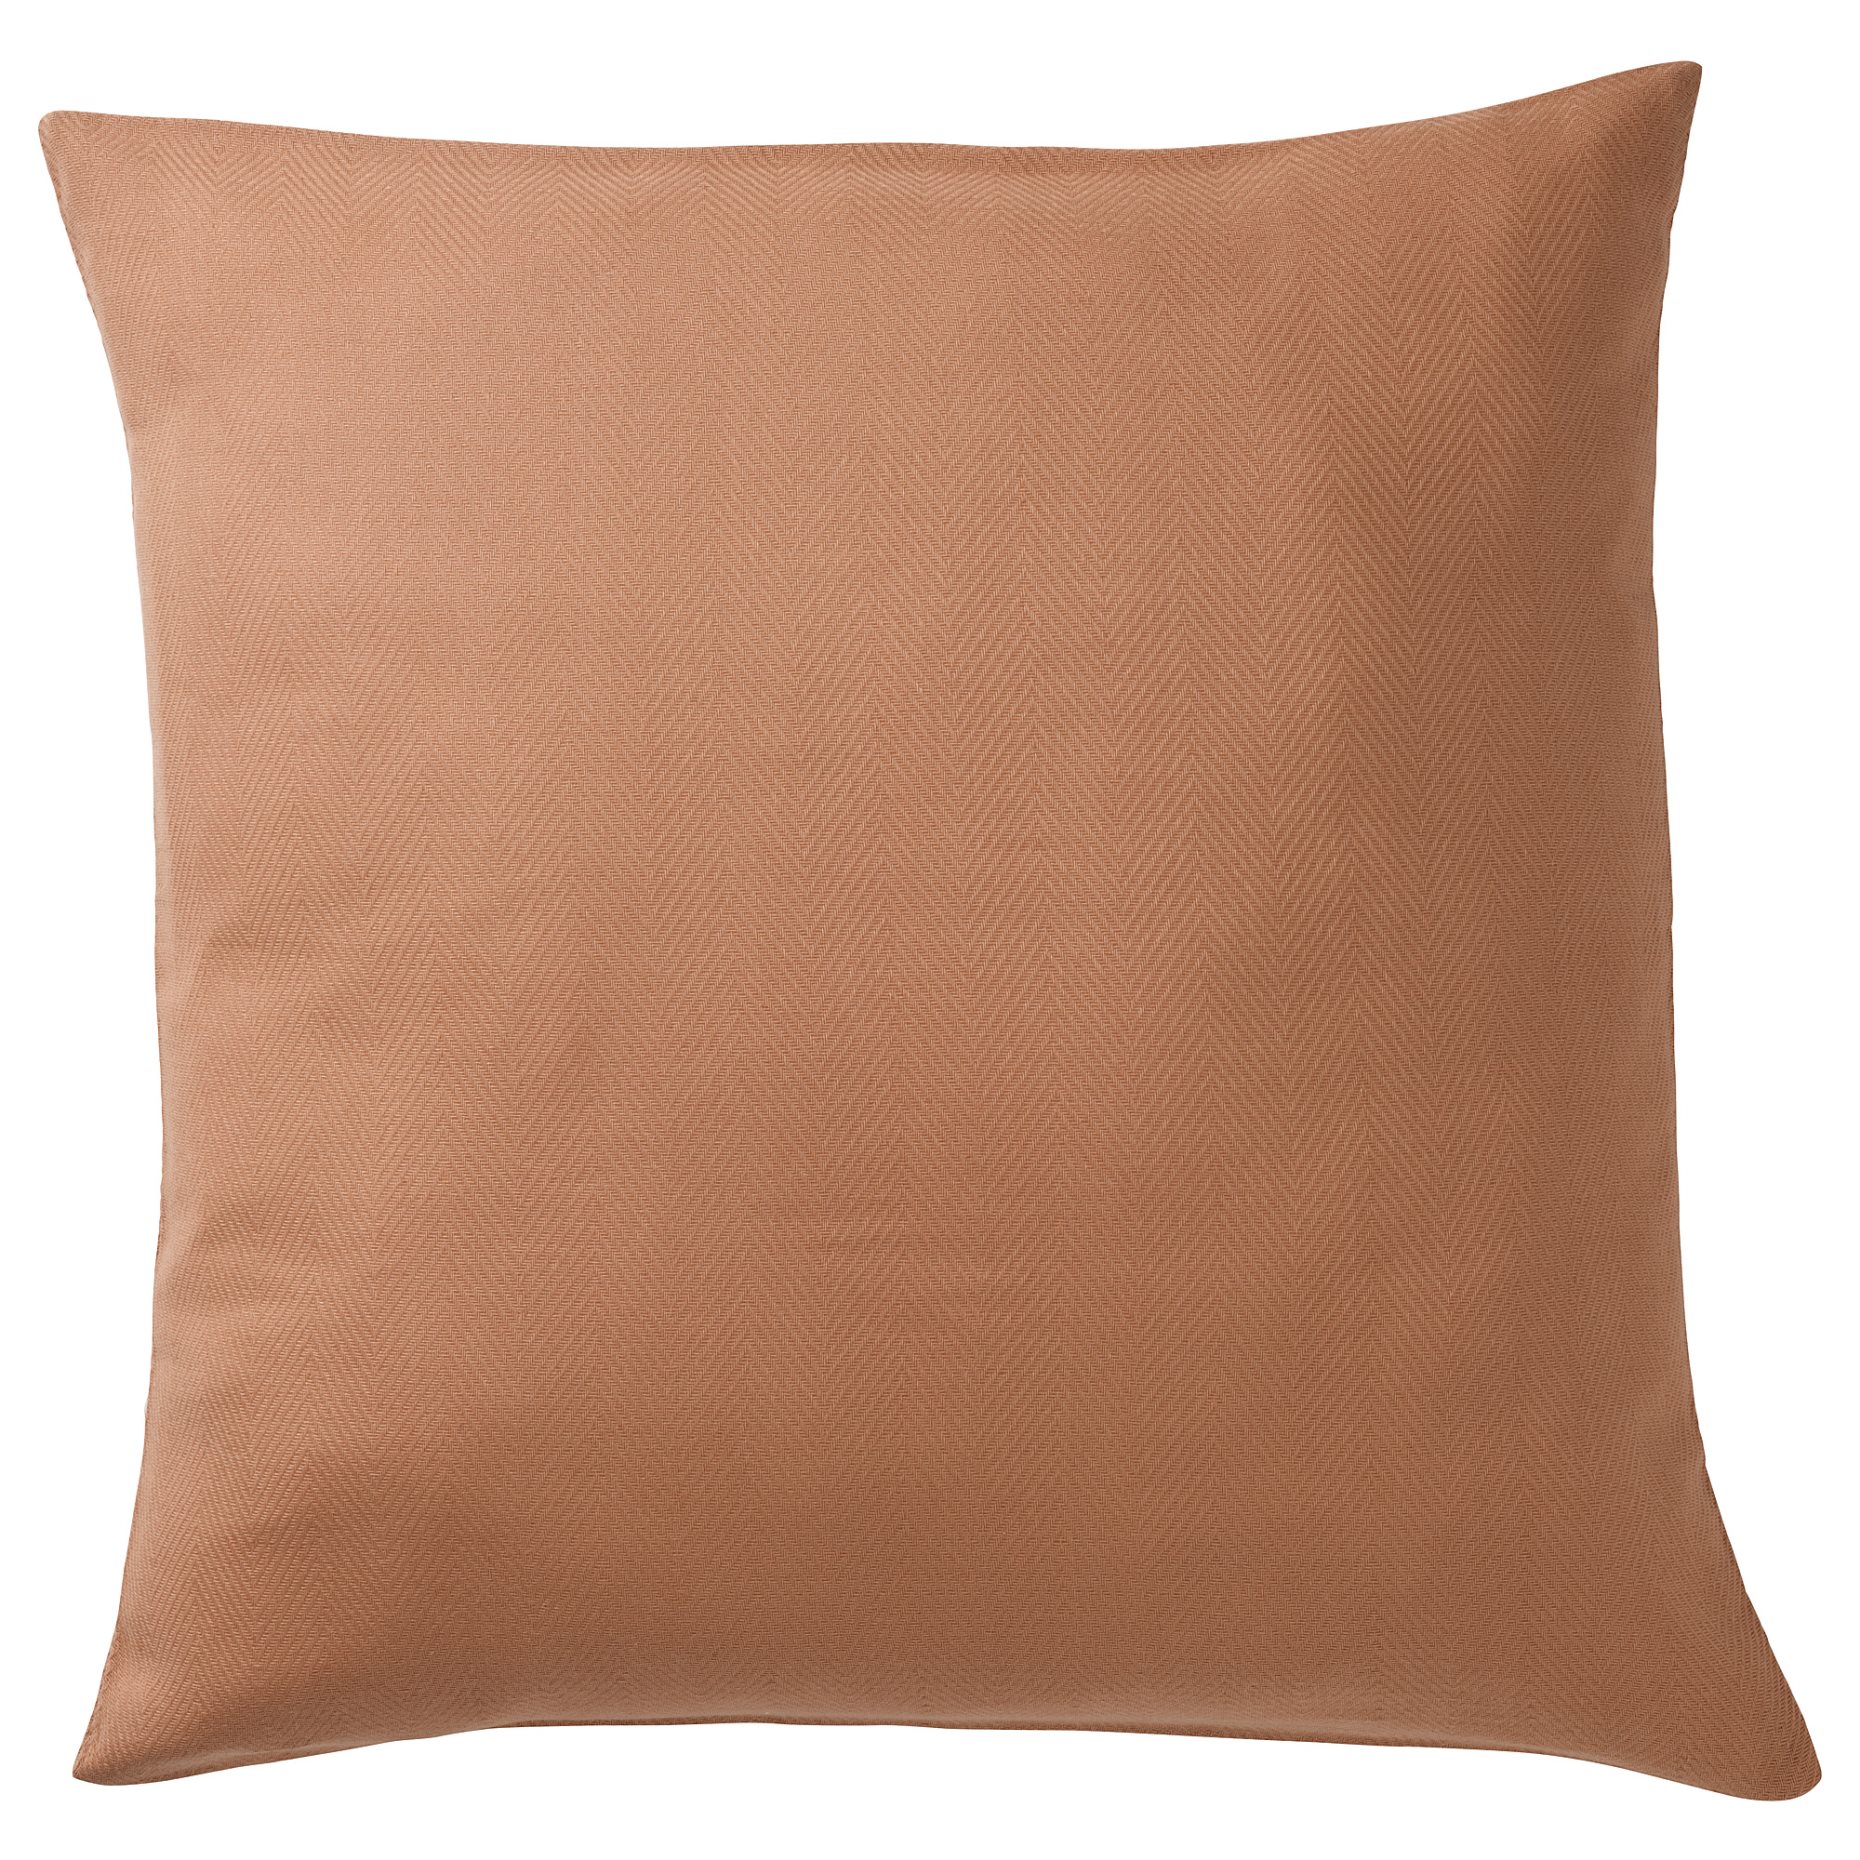 PRAKTSALVIA, cushion cover, 50x50 cm, 905.106.05